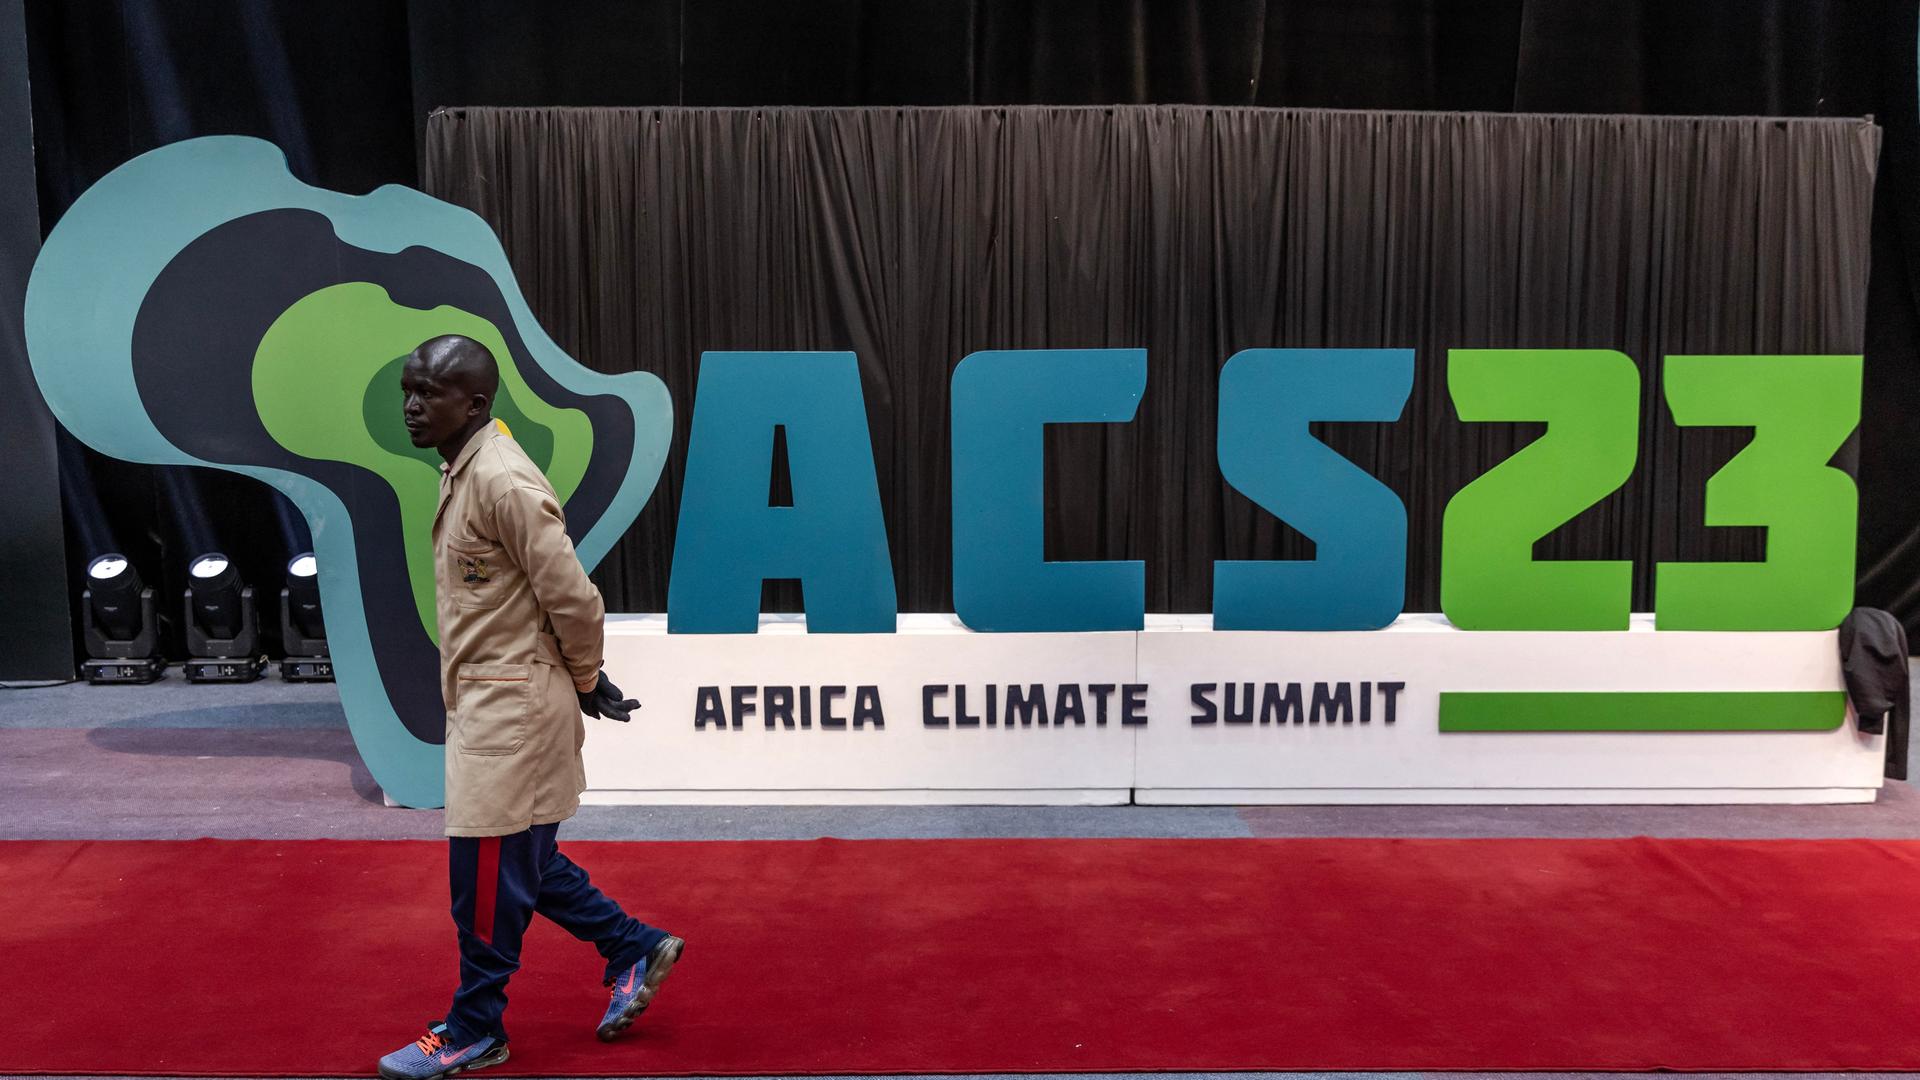 Ein Arbeiter geht auf einem roten Teppich, im Hintergrund steht ein Plakat mit dem Logo des Afrika-Klimagipfels.